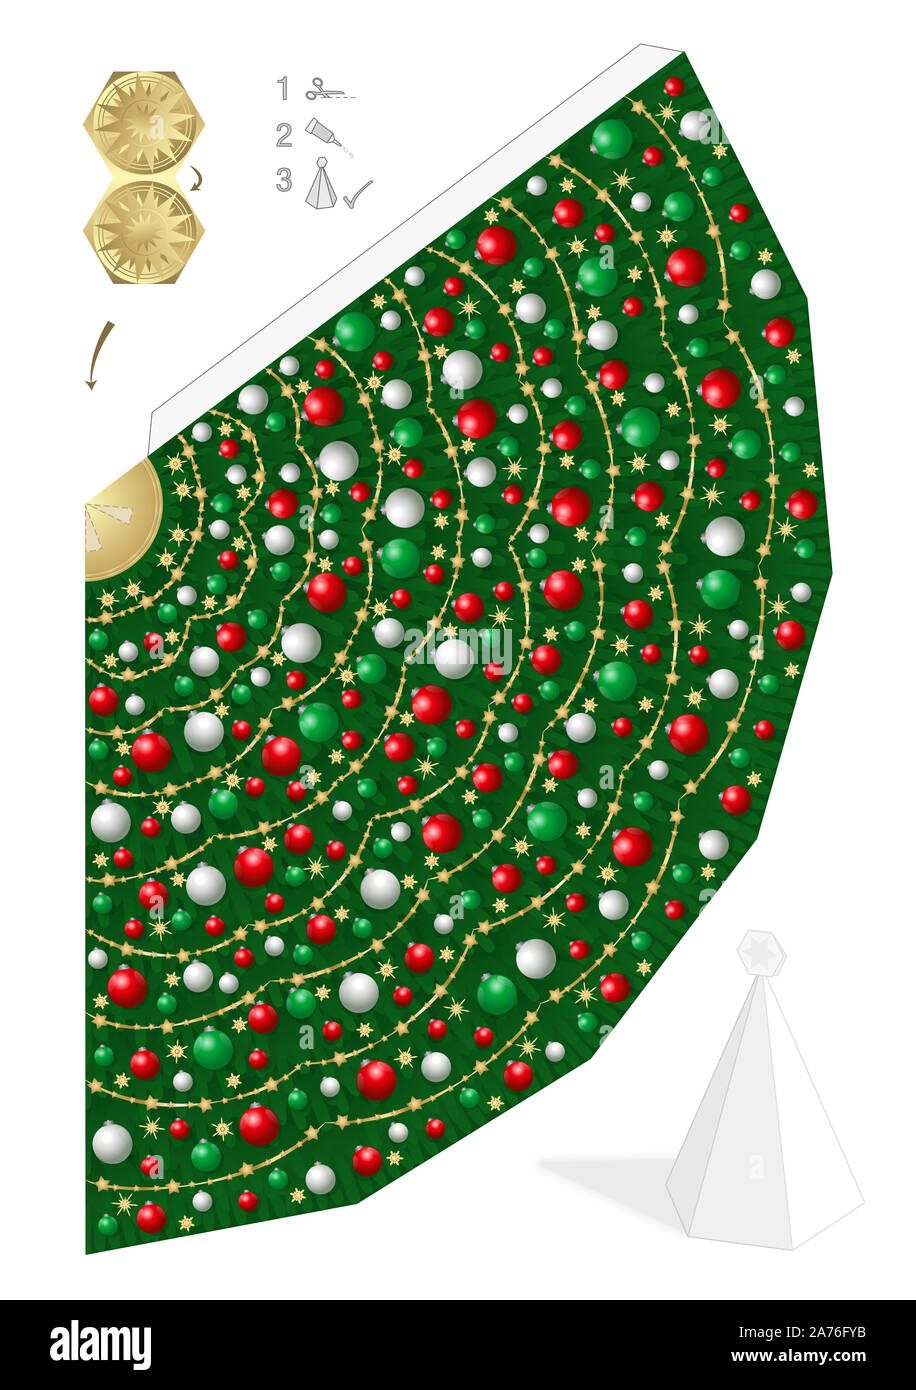 Modello di carta di albero di natale con il rosso, verde e bianco Natale palle e stelle di paglia. Modello per tagliare, per la piegatura e la colla. Foto Stock